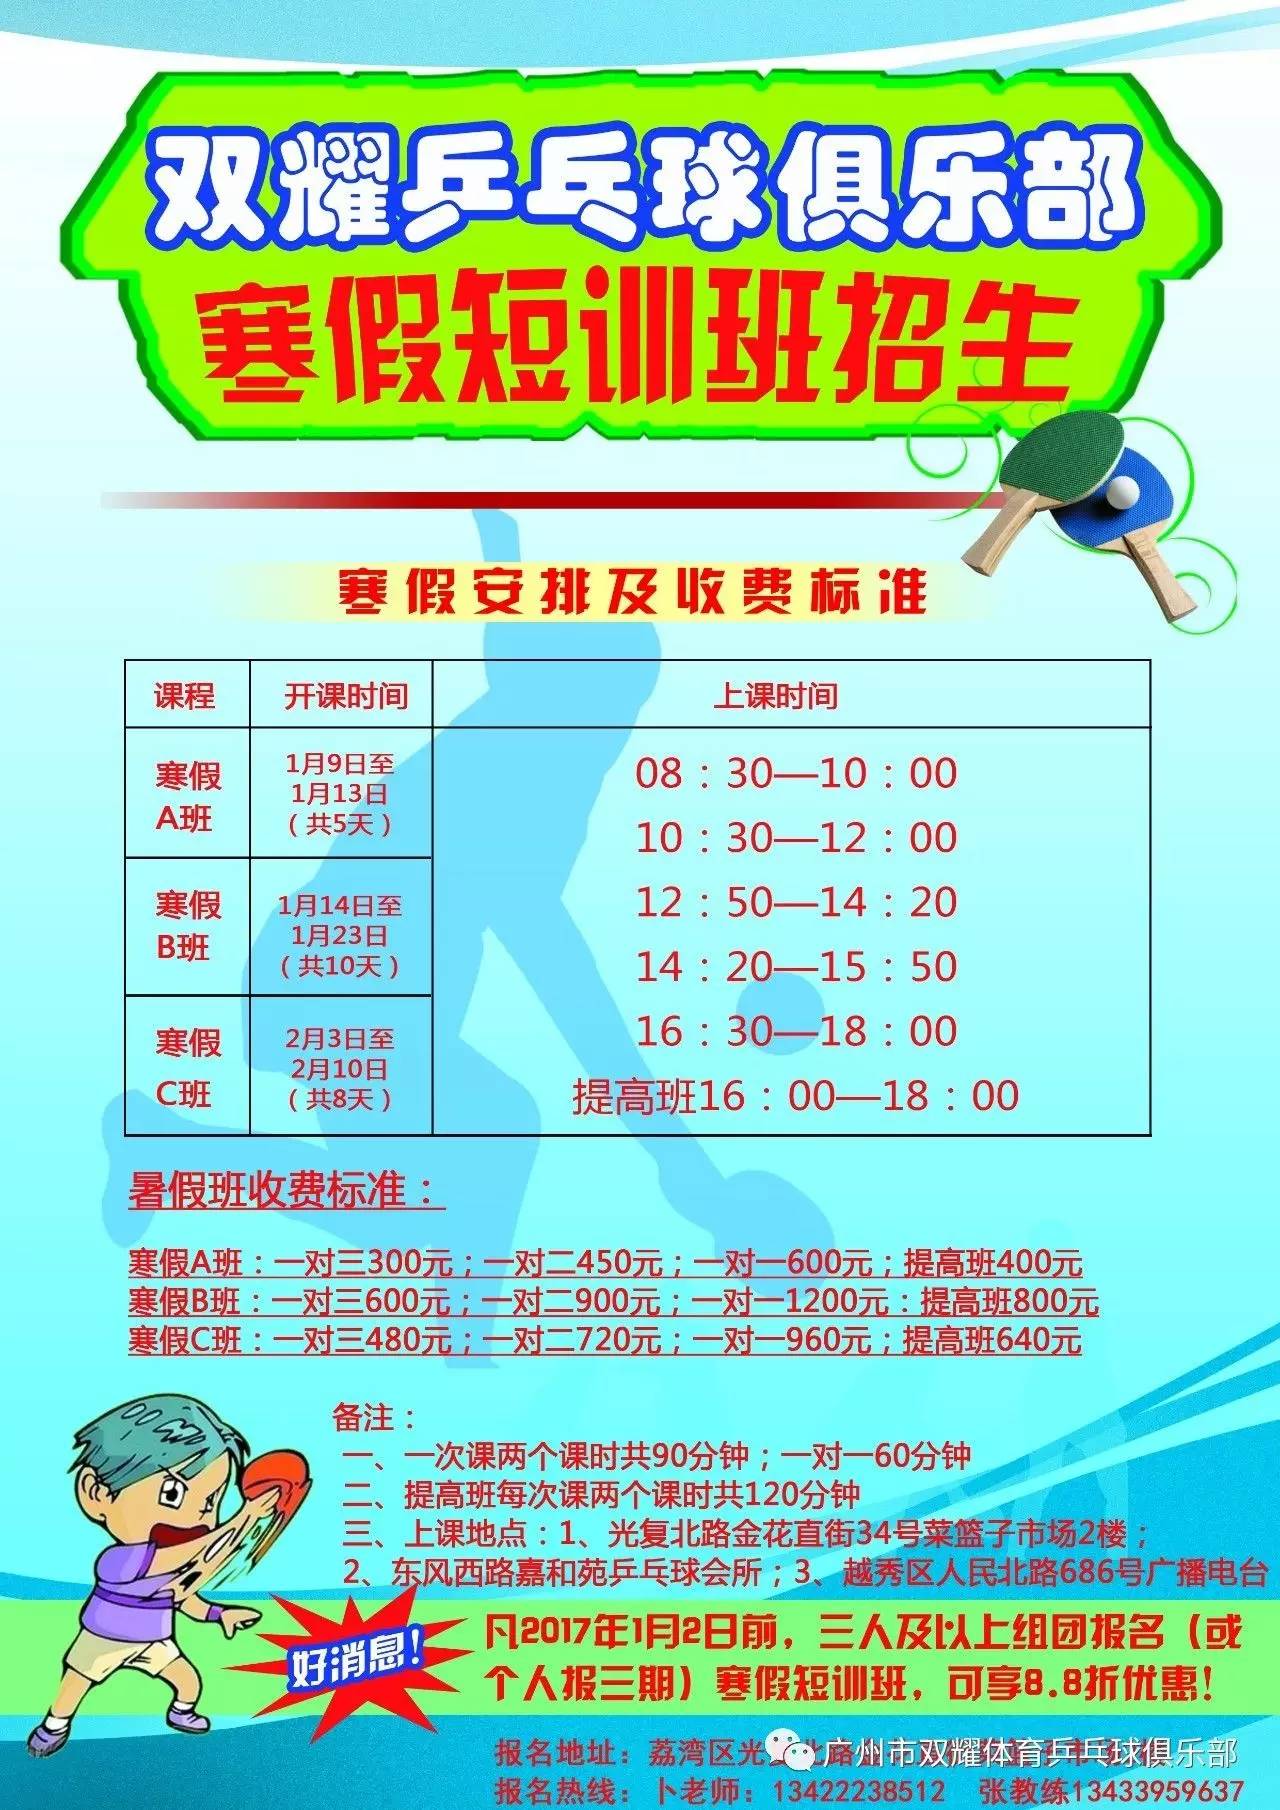 乒乓球学校招生简章图片